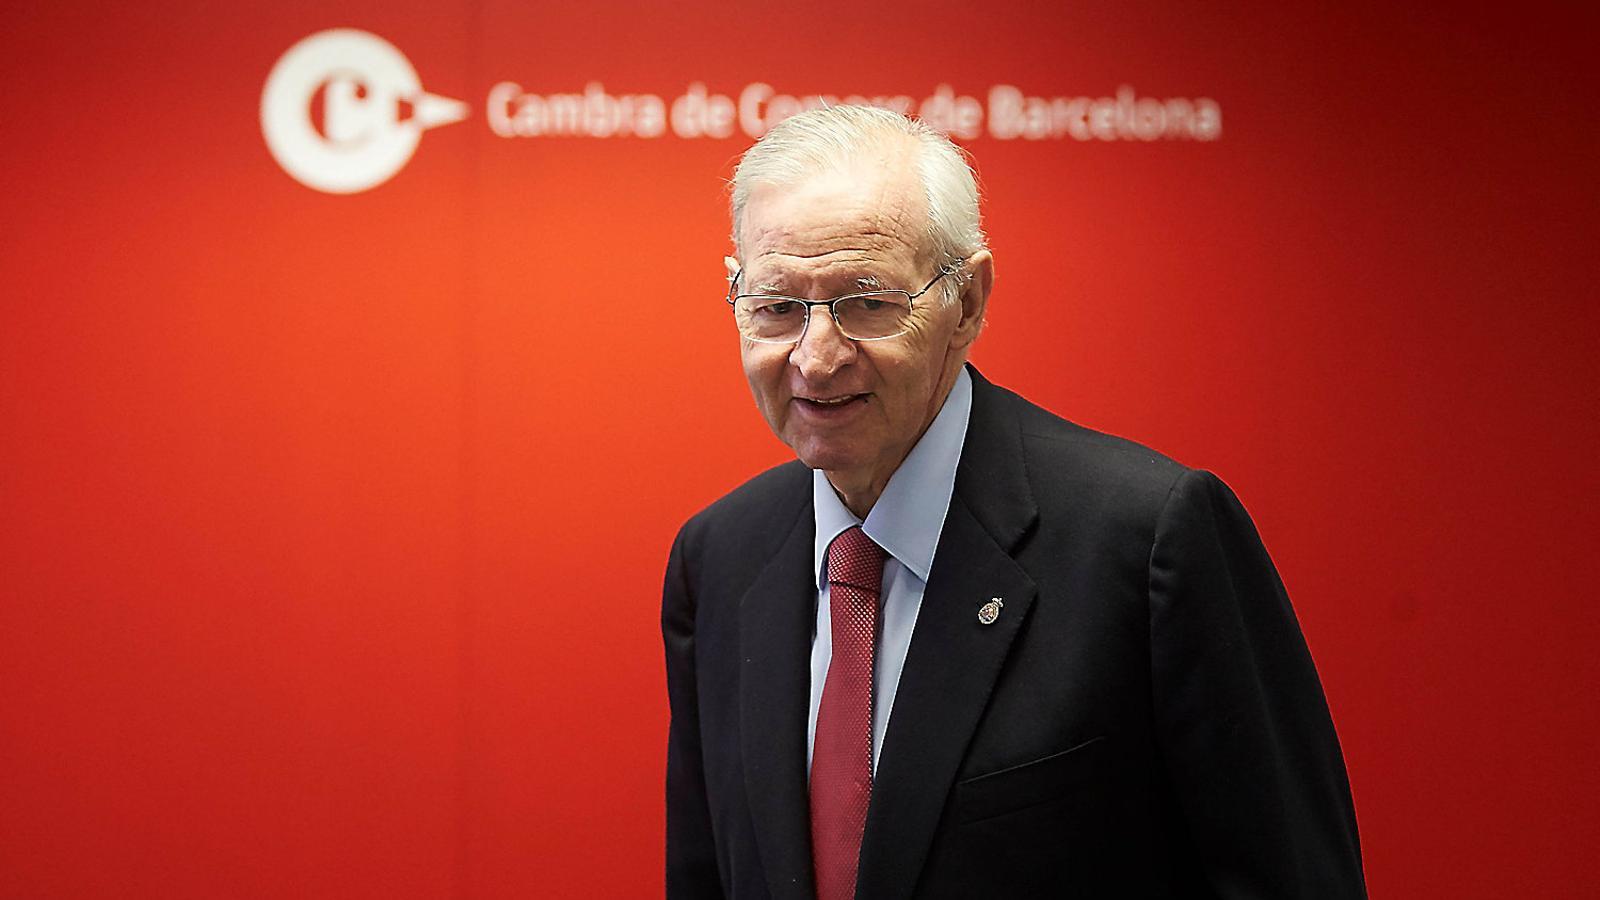 Miquel Valls era president de la Cambra barcelonina quan es va elaborar l'informe sobre la independència que no es va publicar / ALEJANDRO GARCÍA / EFE